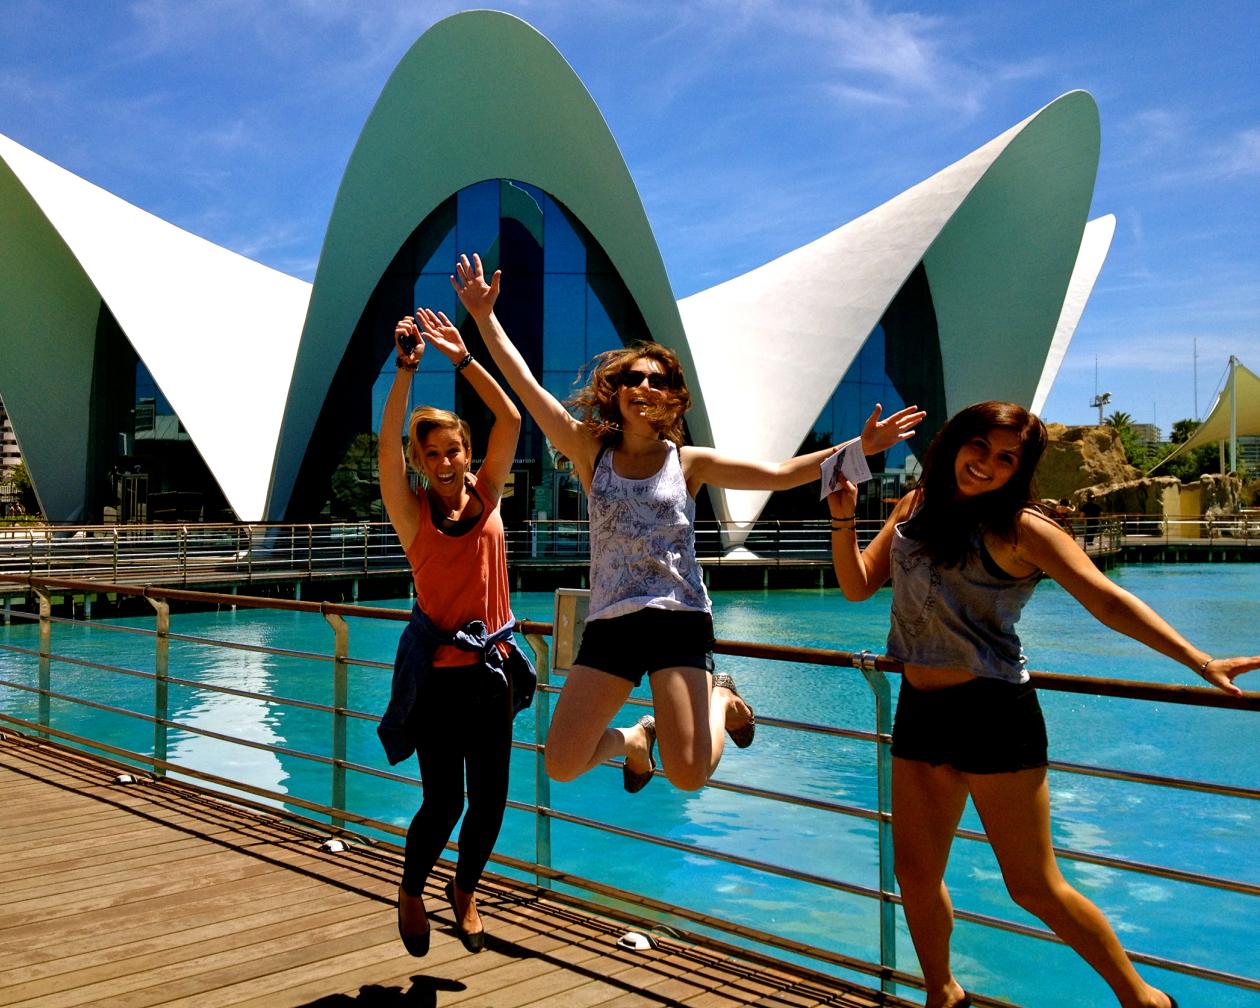 Three students jump at the Valencia Ciudad de artes y ciencias